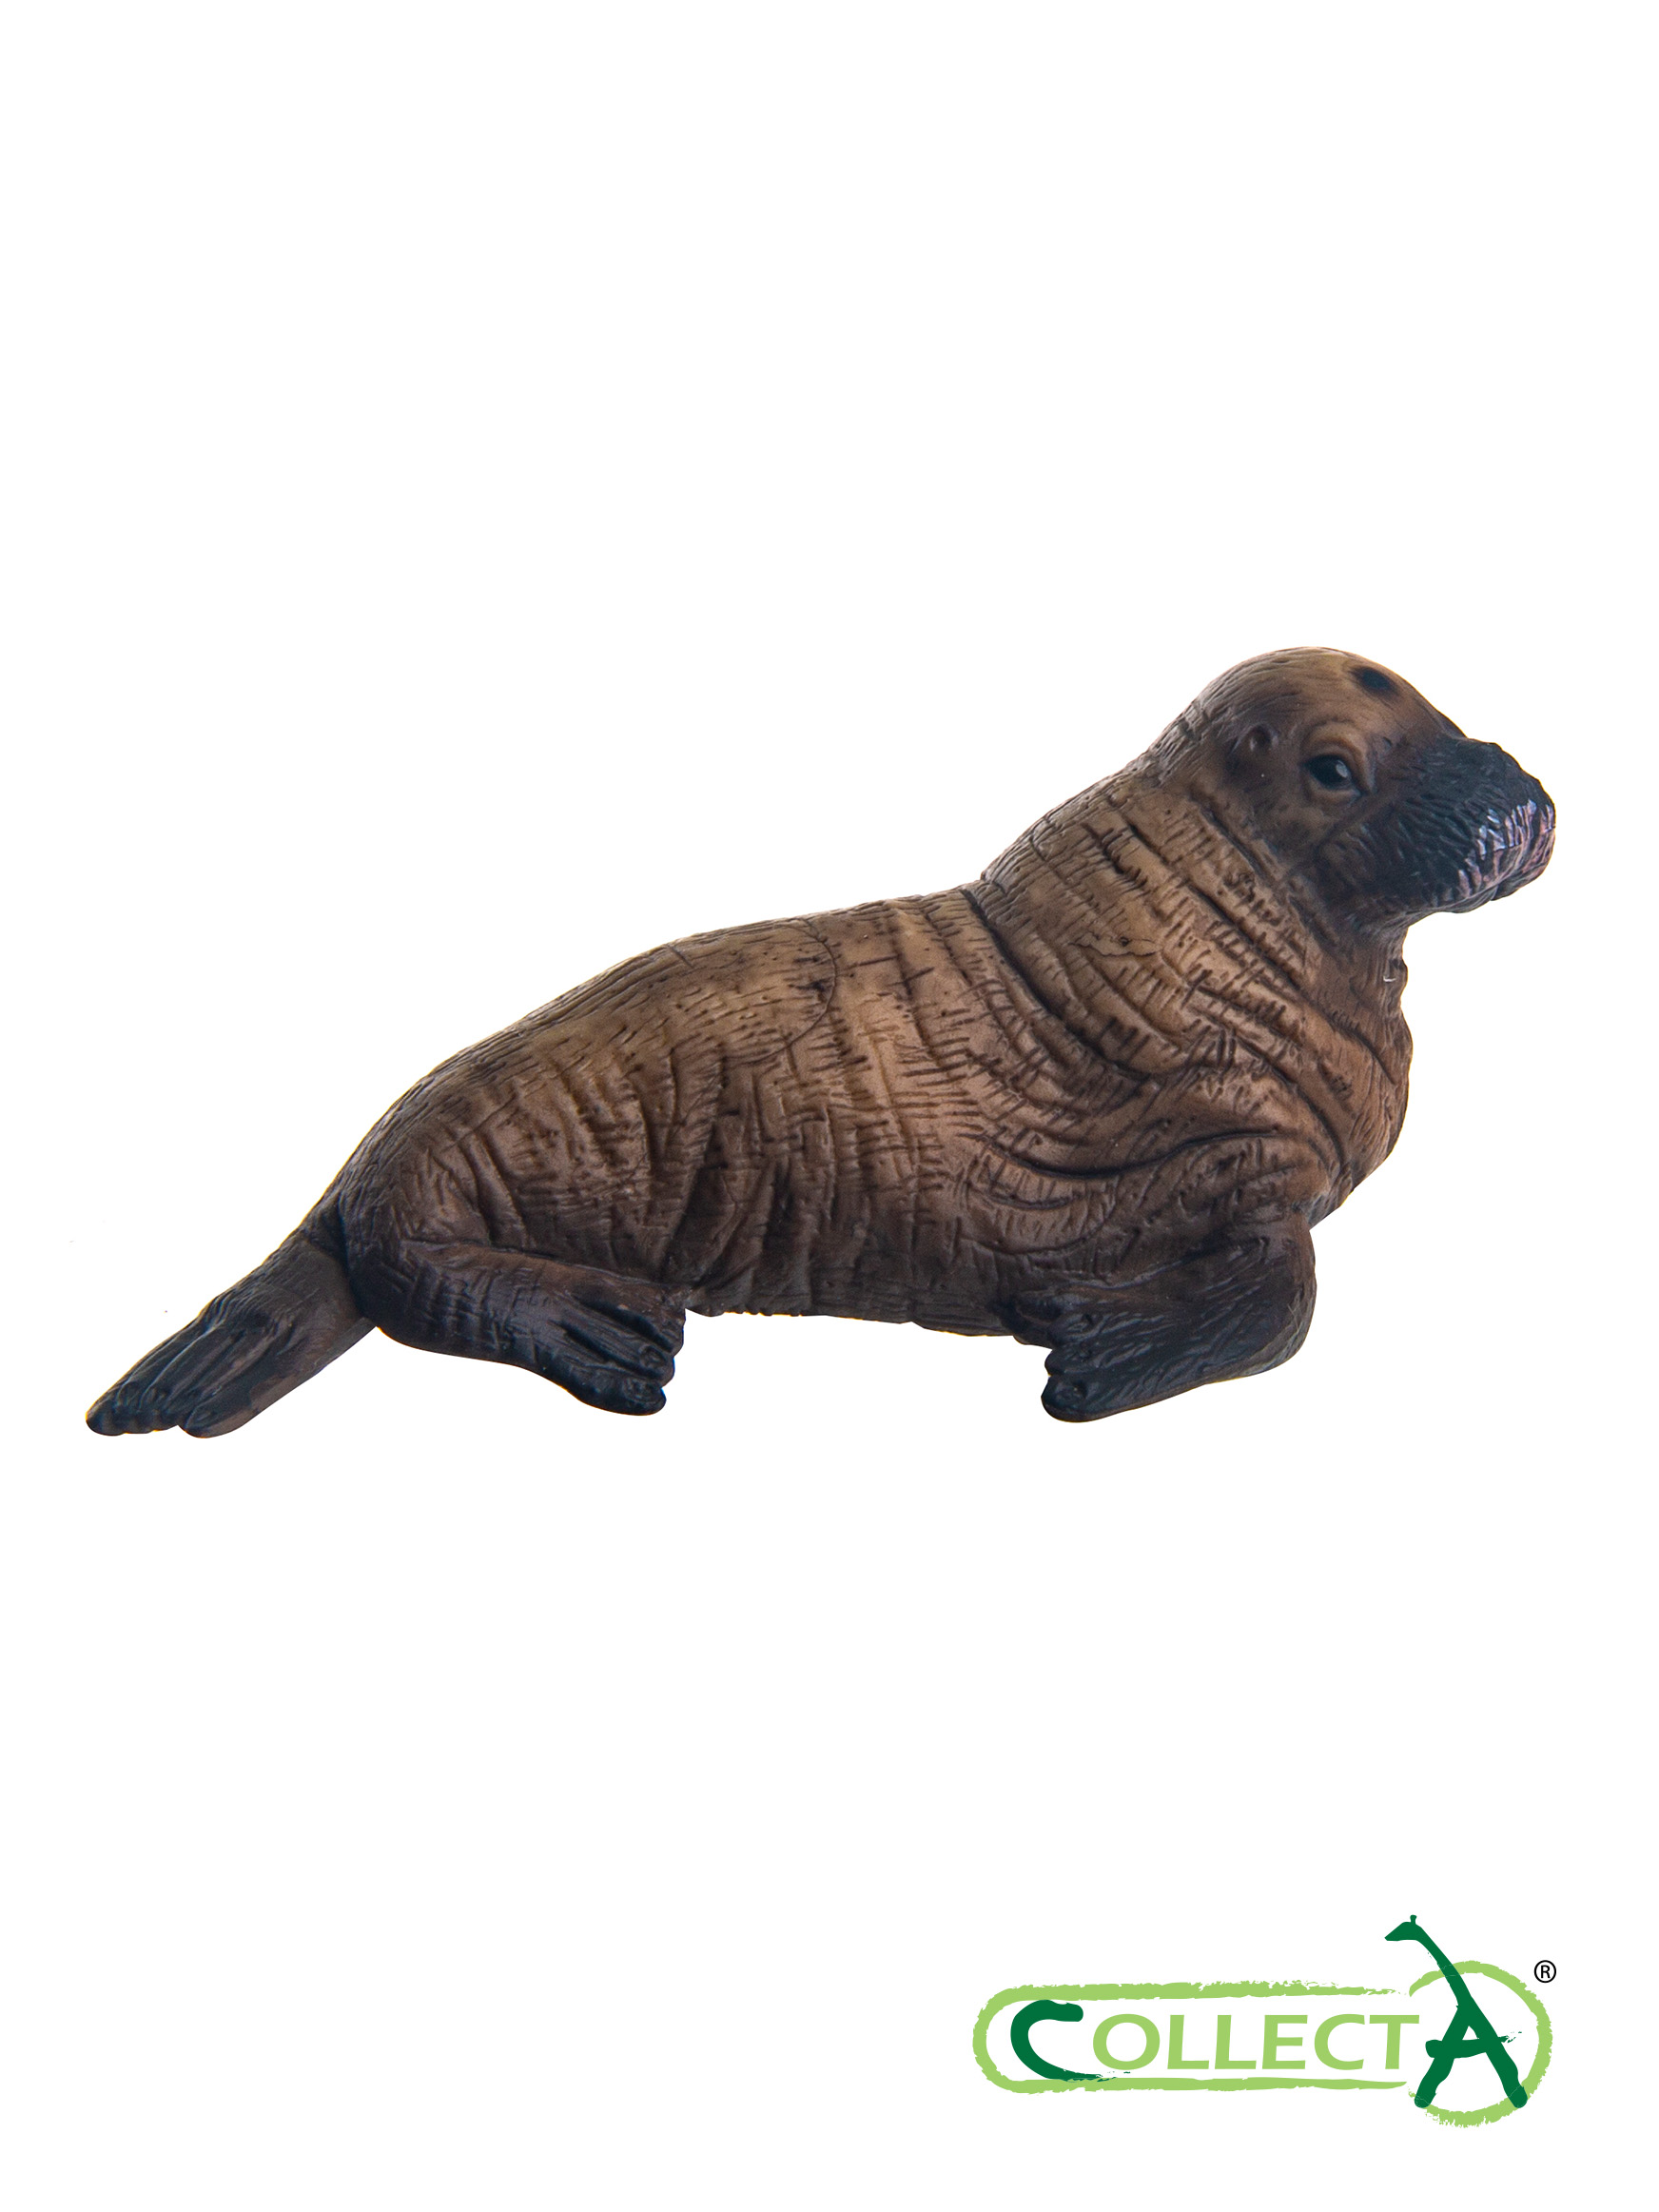 Игрушка Collecta Детёныш моржа фигурка морского животного - фото 3